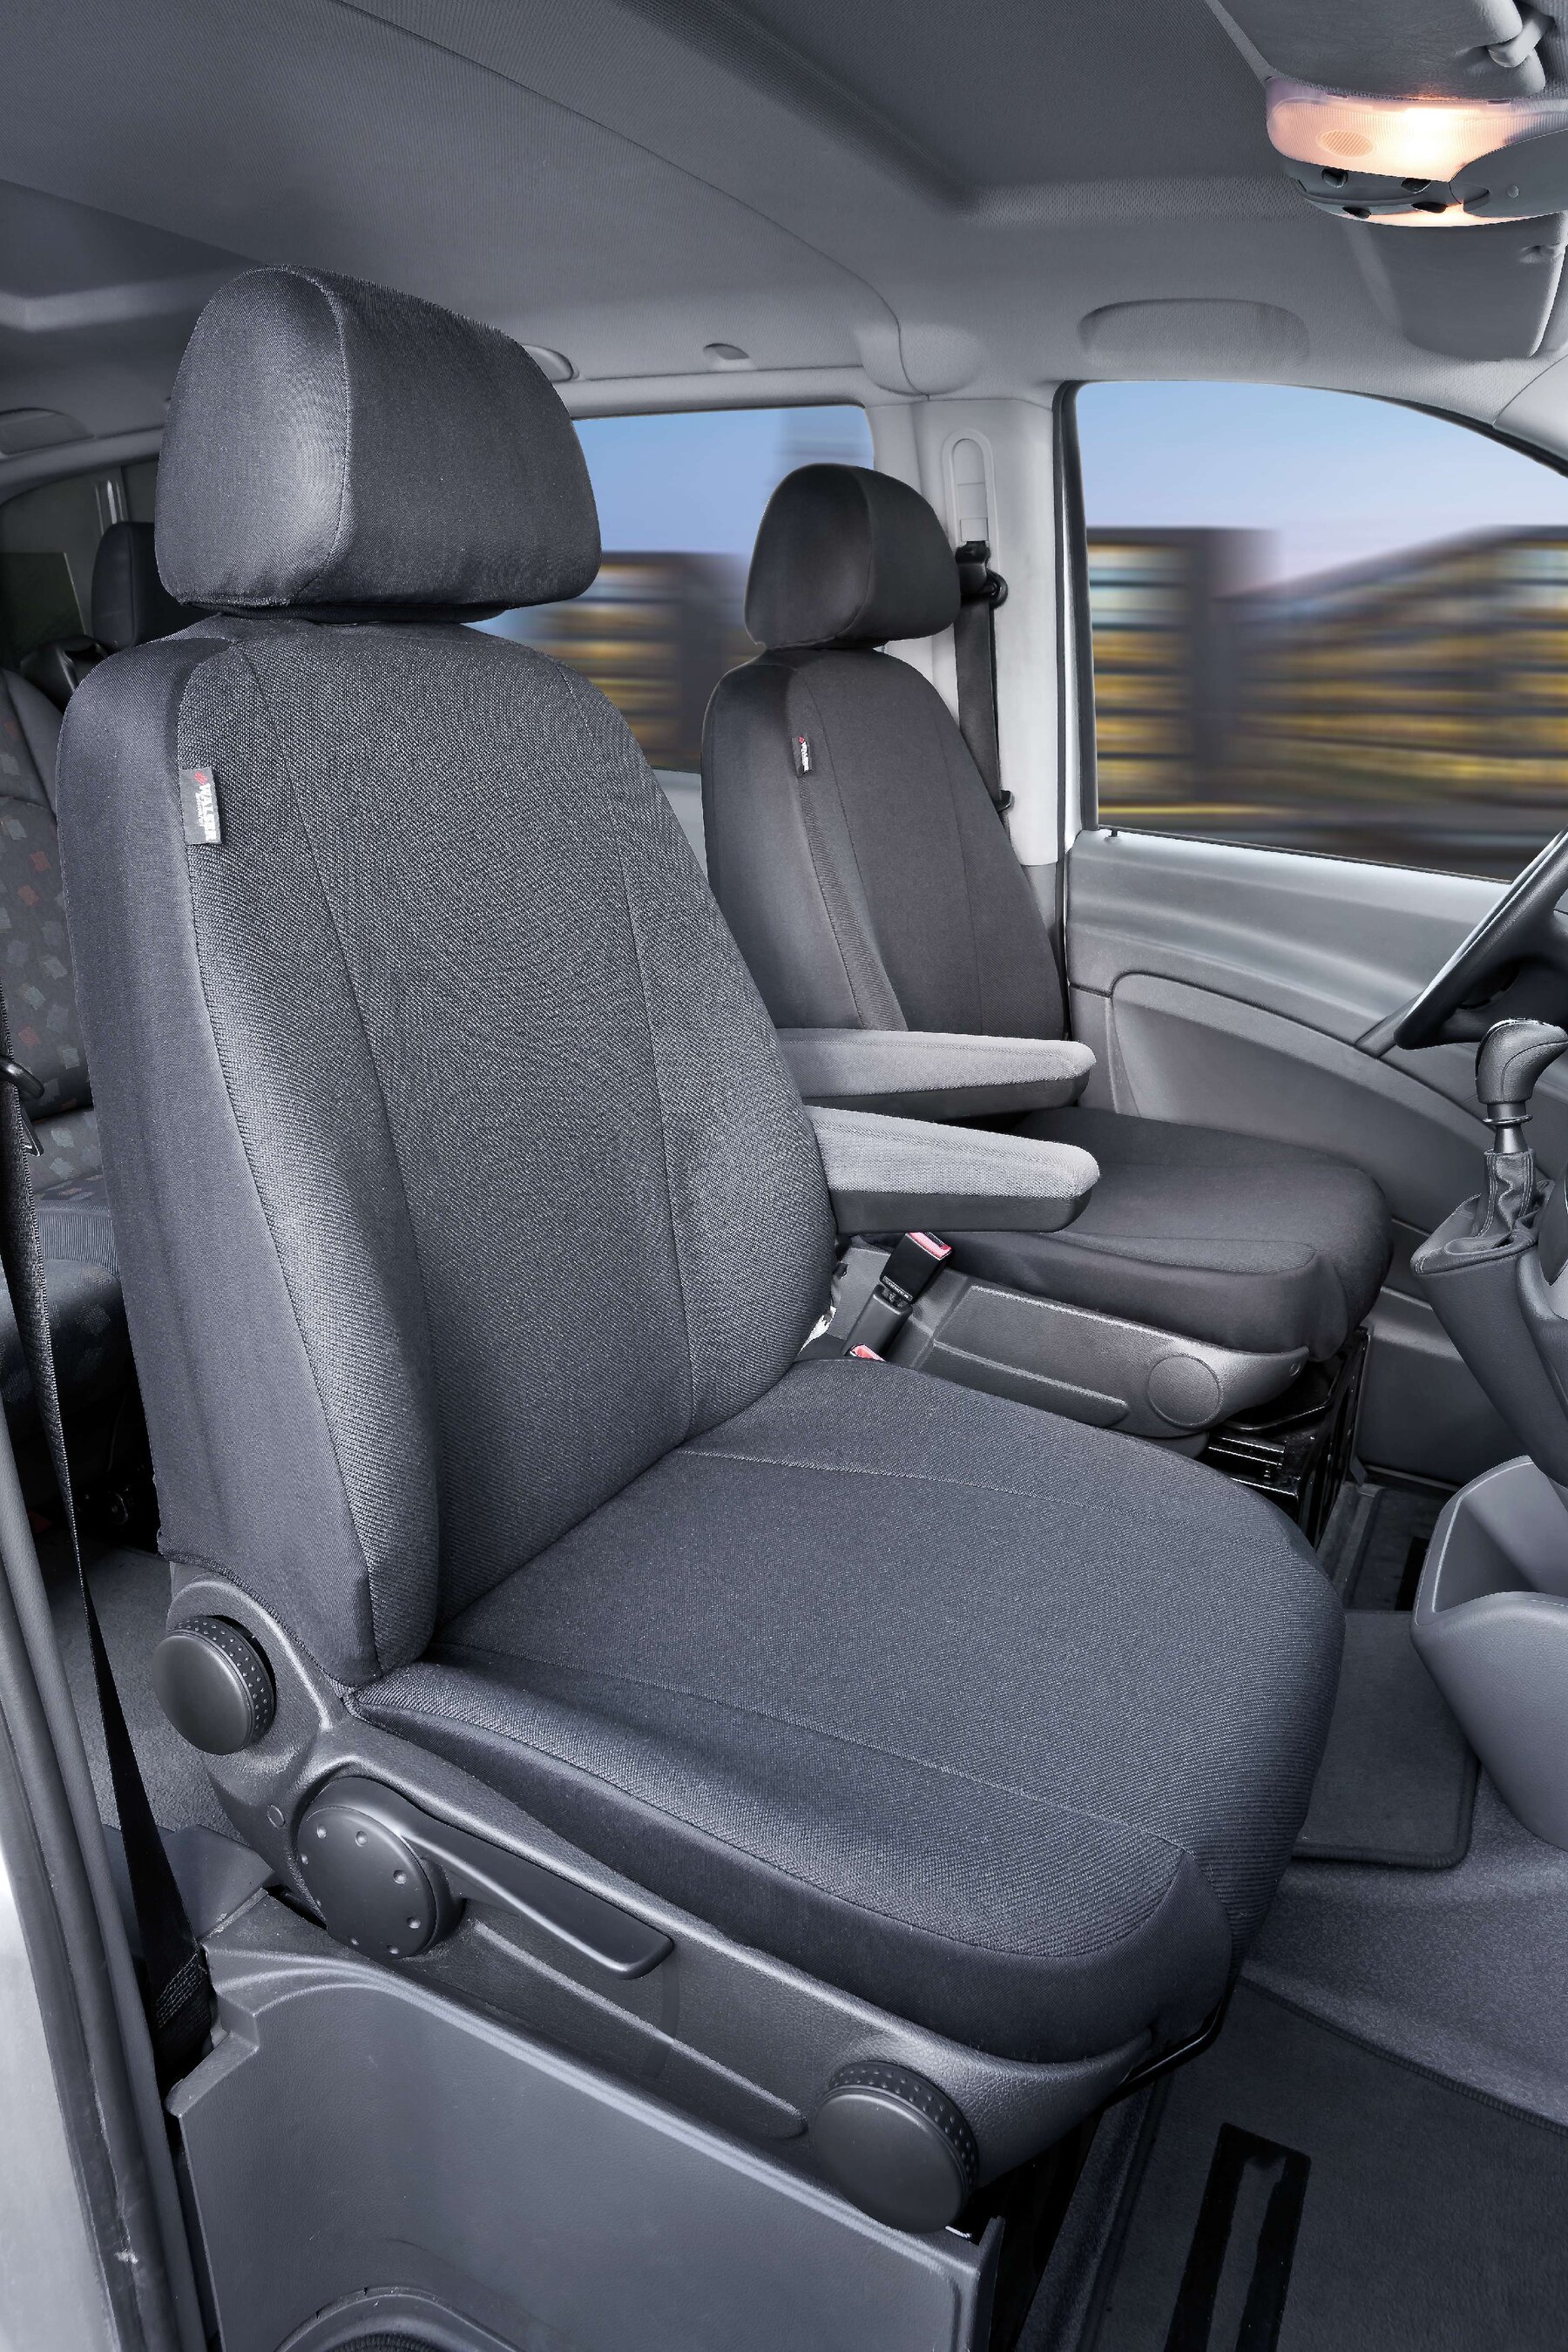 Housse de siège Transporter en tissu pour Mercedes Vito/Viano, 2 sièges simples pour accoudoir à l'intérieur